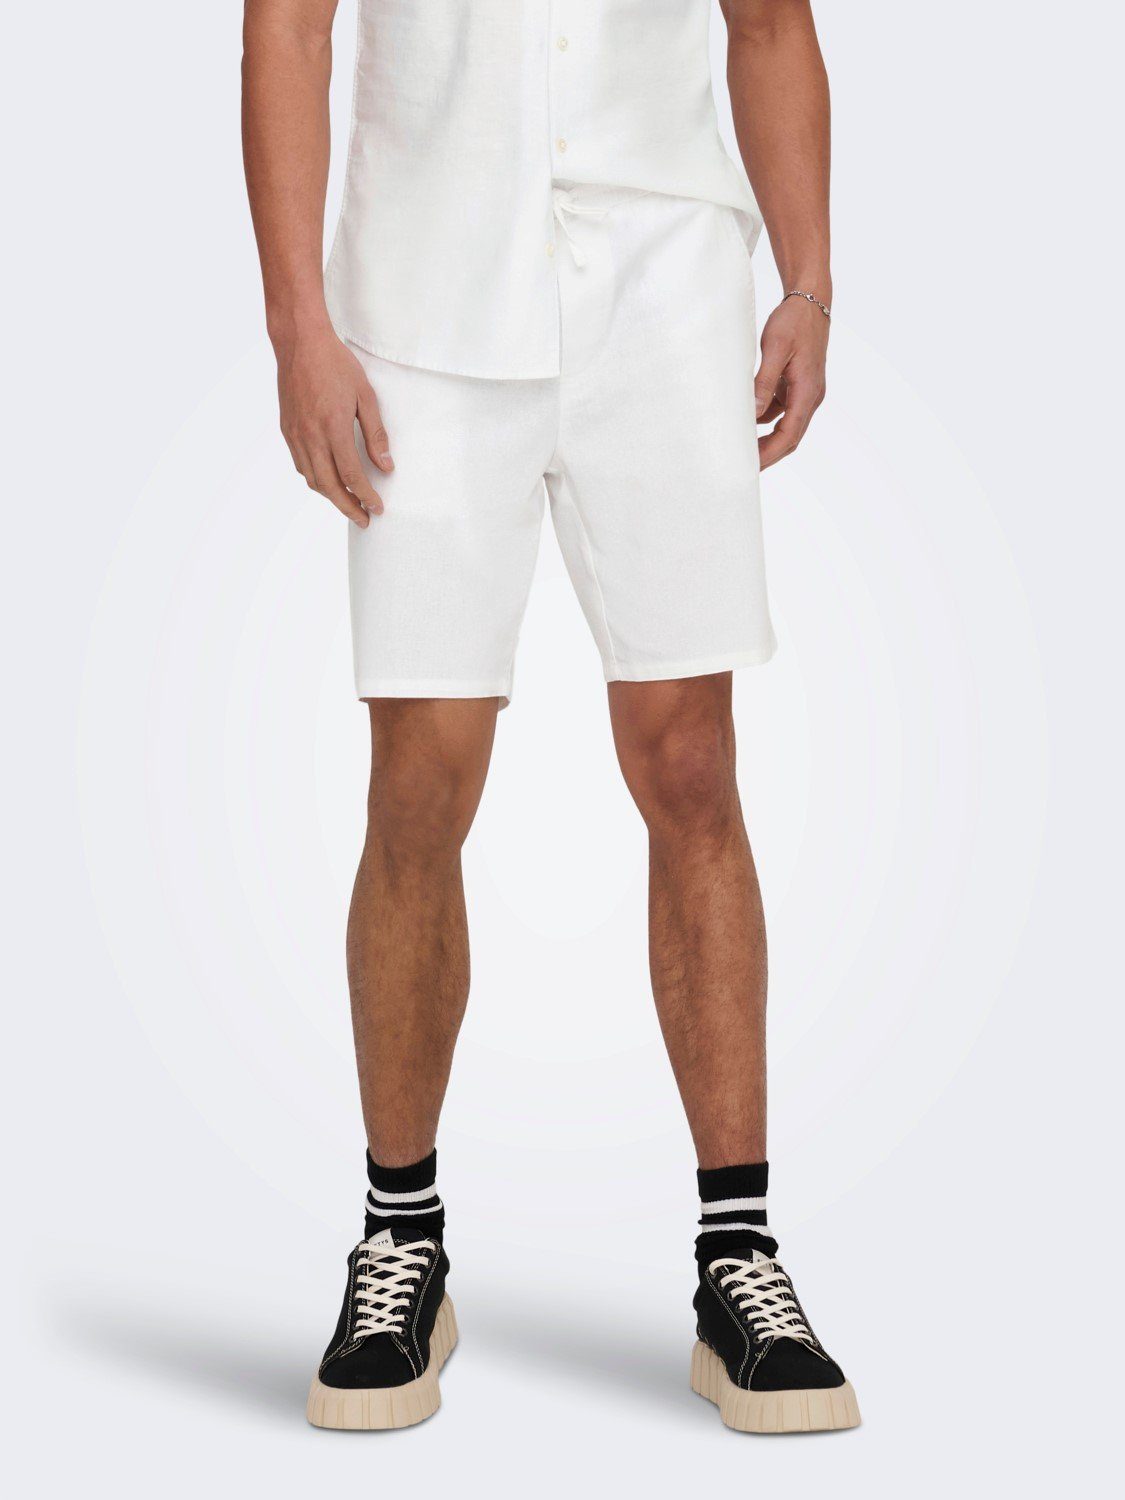 ONLY & SONS Chinoshorts Leichte Stoff Shorts Bermuda Hose ONSLINUS 5058 in Weiß | 